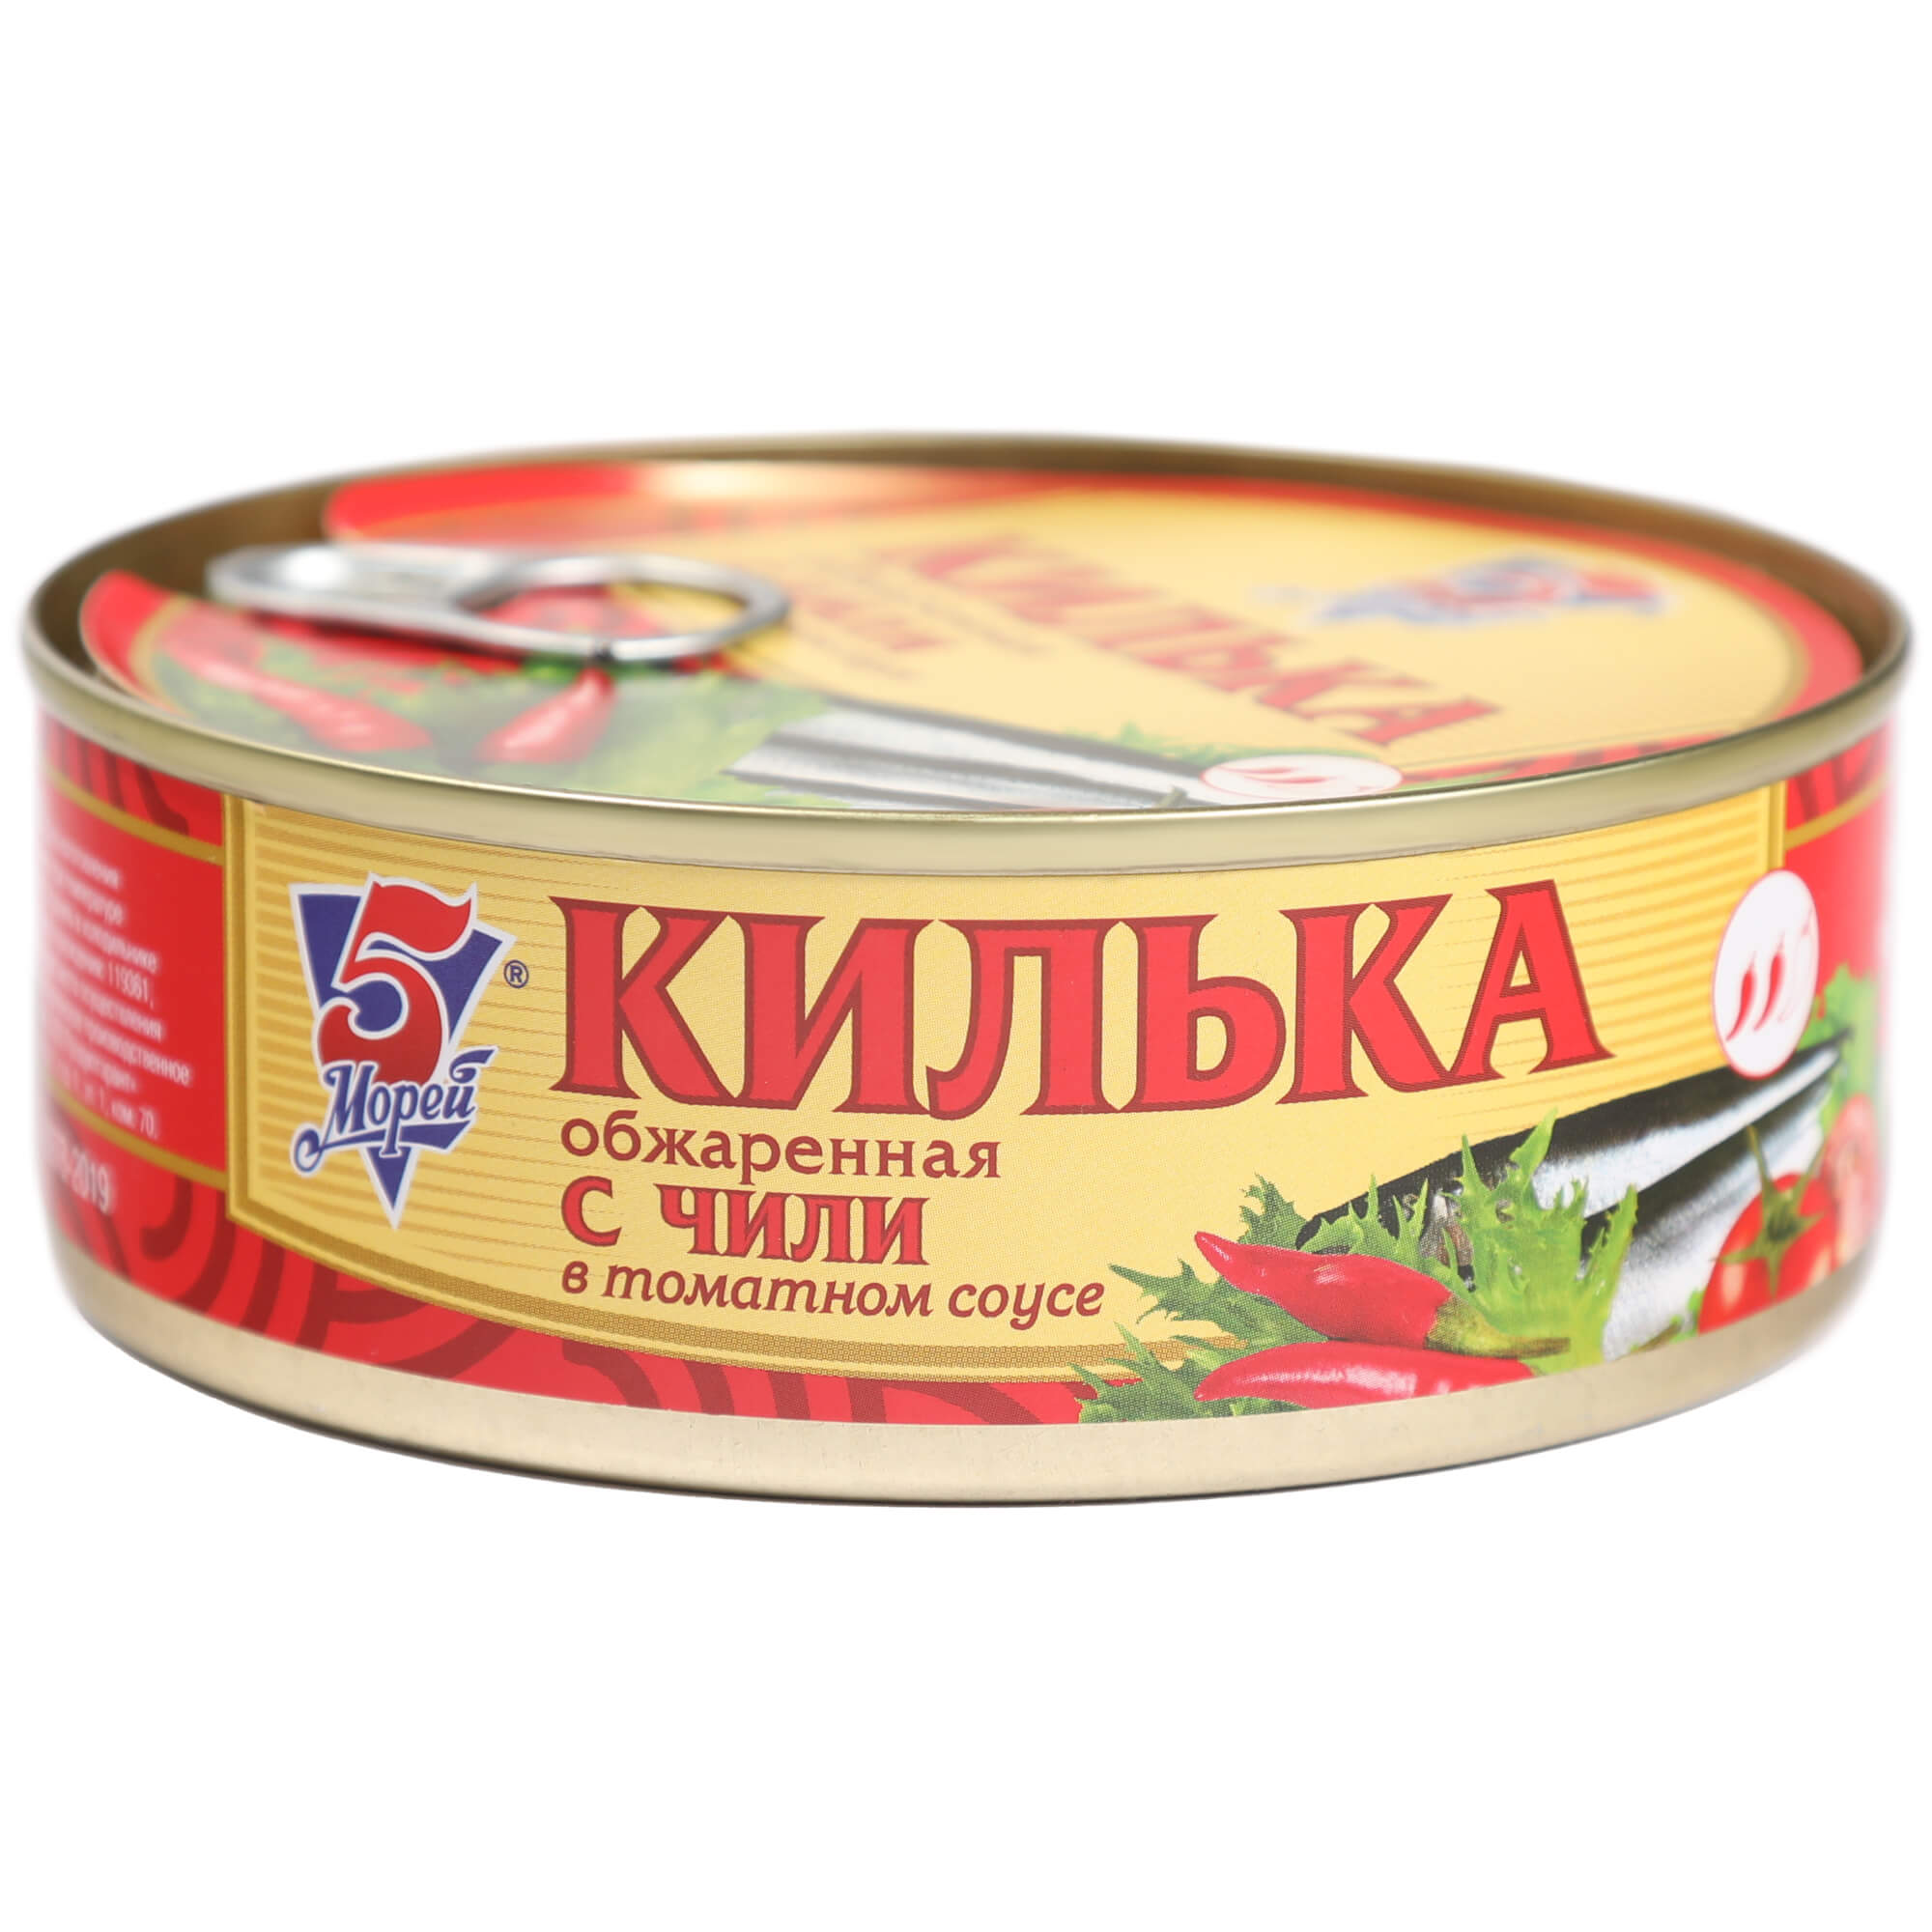 Килька Keano 5 Морей в соусе чили 240 г килька балтийская знаток прод в томатном соусе 240 г